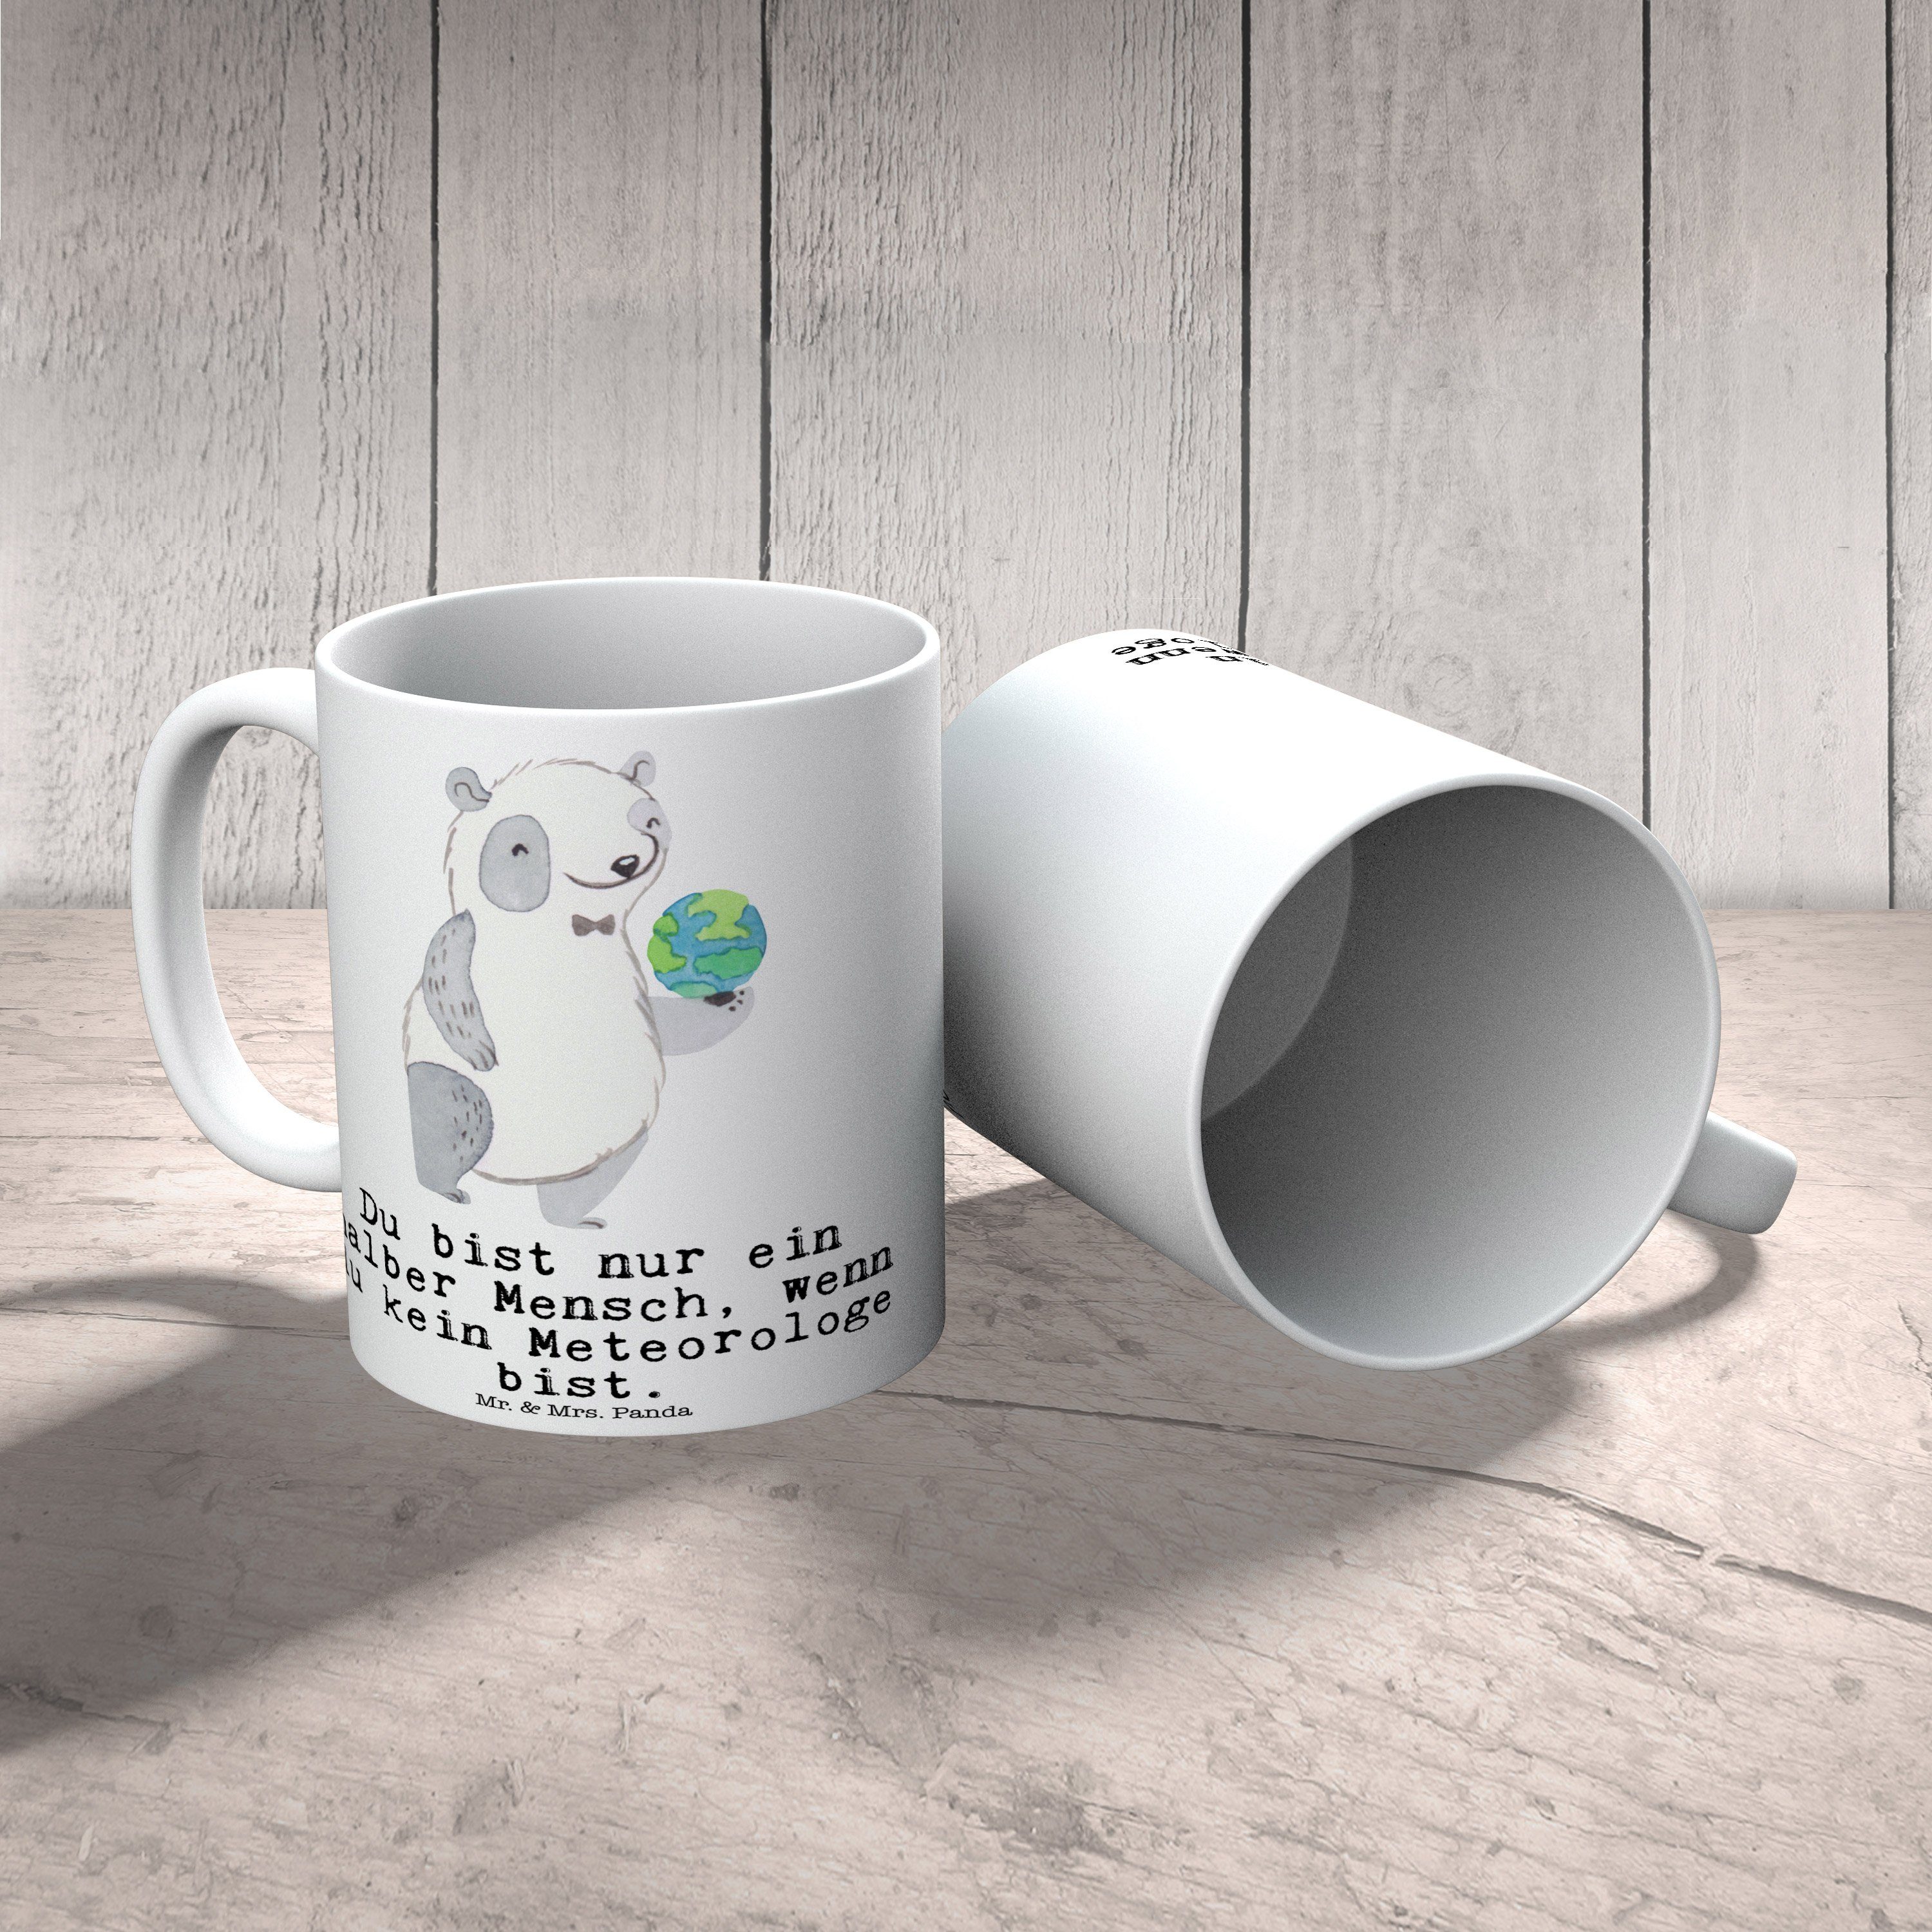 Mr. & - Tasse, - Mrs. Weiß Meteorologe Mitarbeiter, Tasse mit Panda Teetasse, Herz Keramik Geschenk